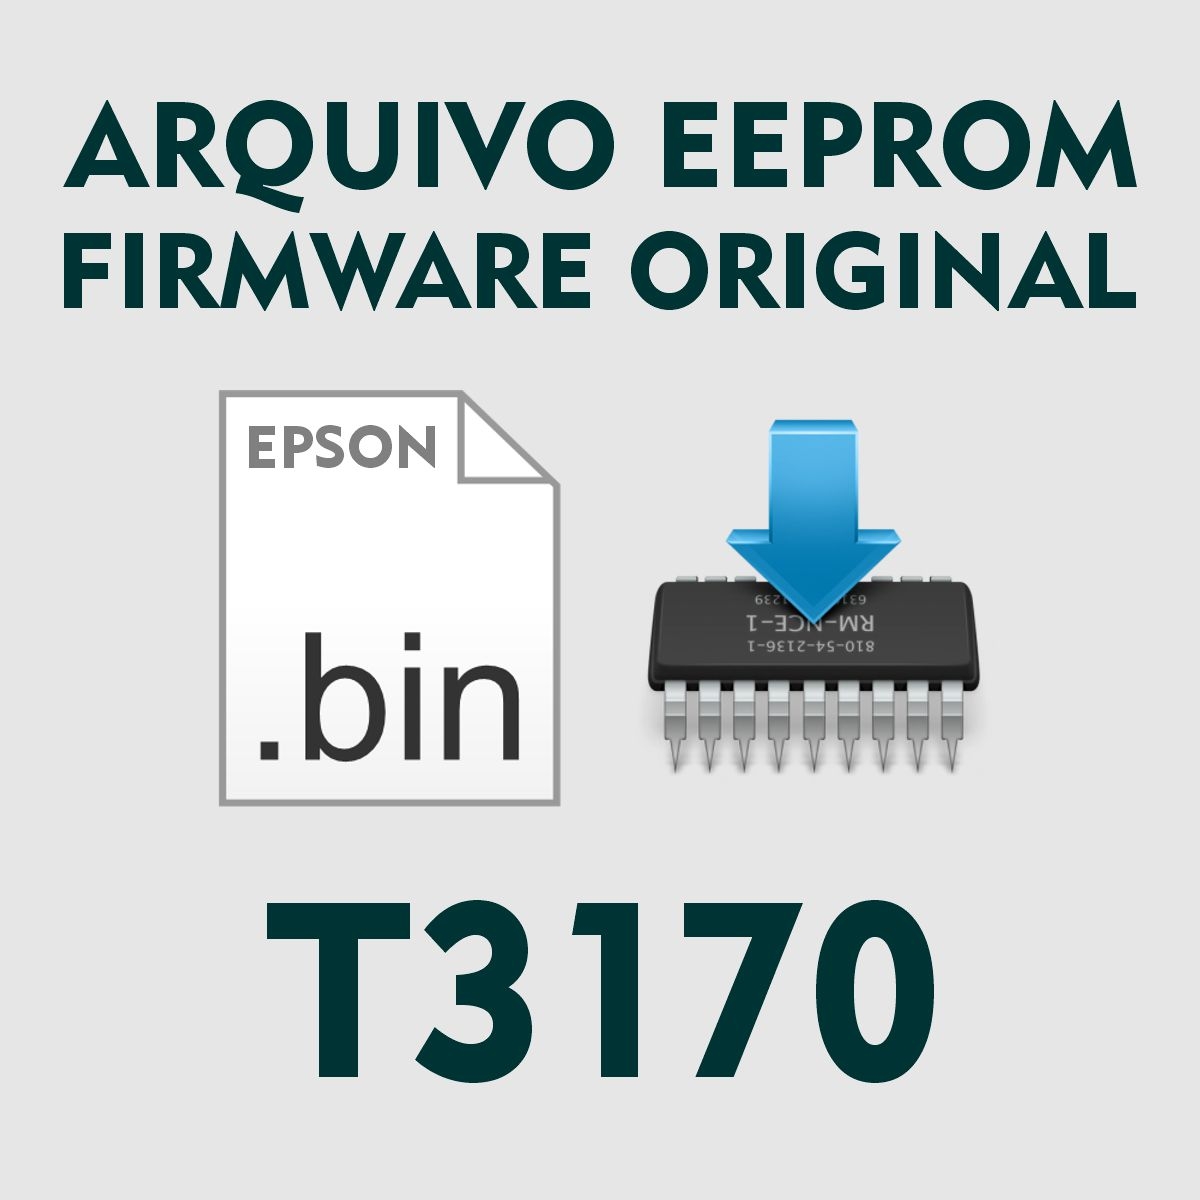 Epson T3170 | Arquivo de Eeprom Firmware .bin - Original